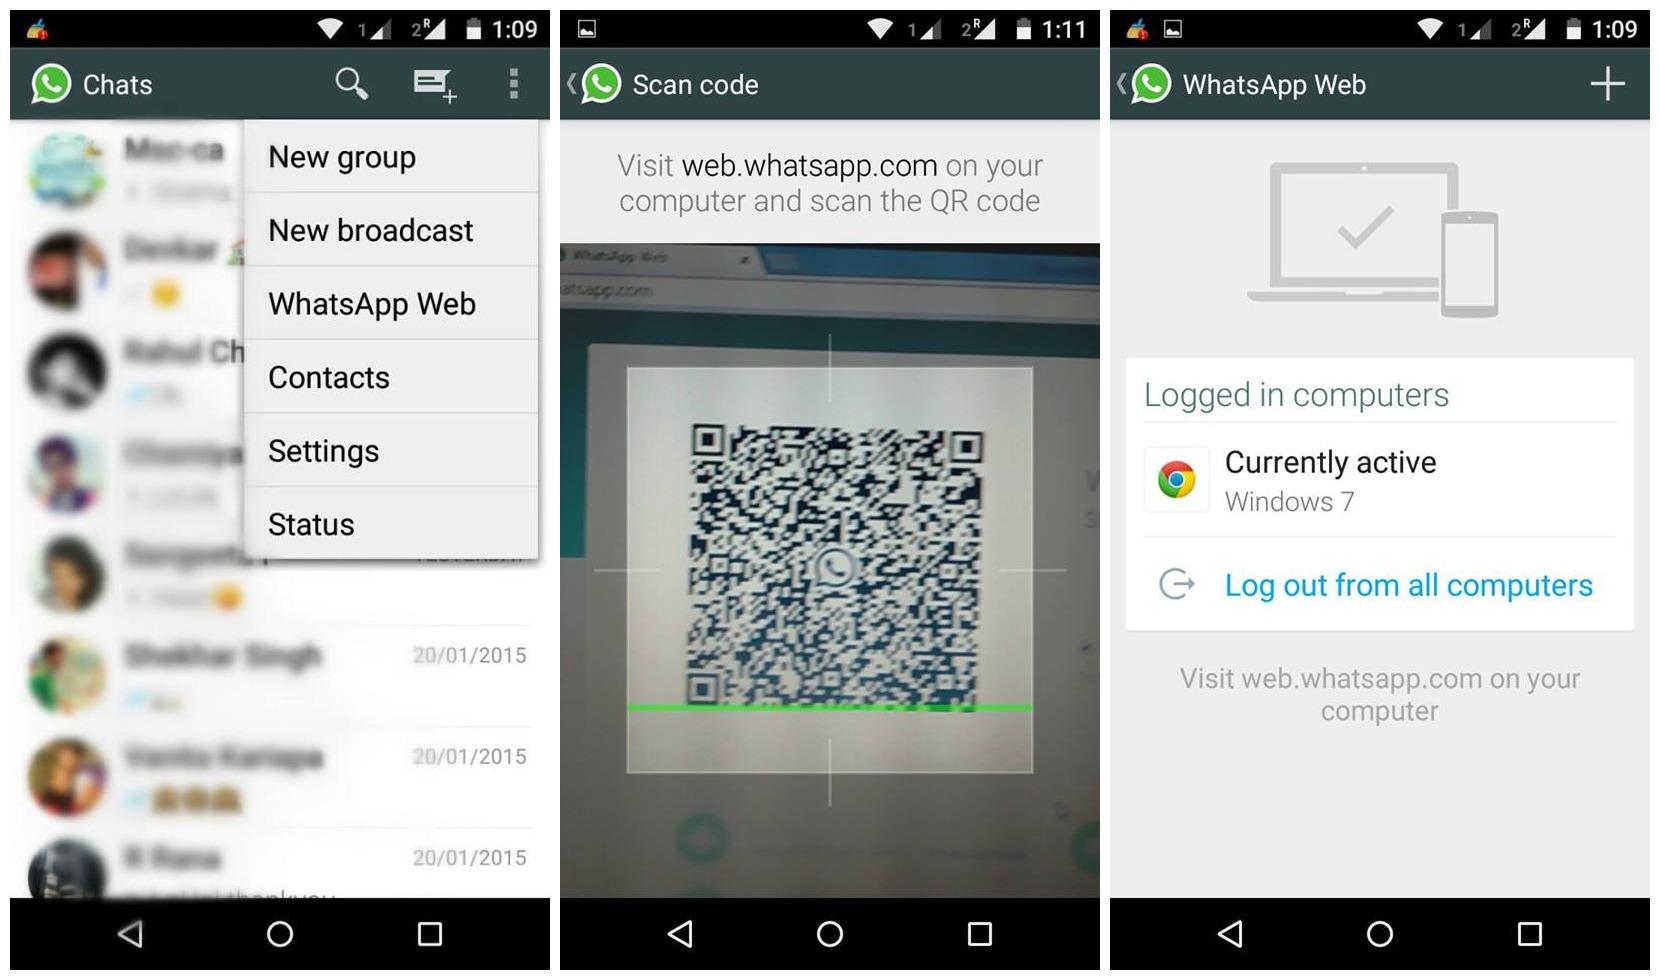 Pirater un compte Whatsapp : mirage et escroquerie !